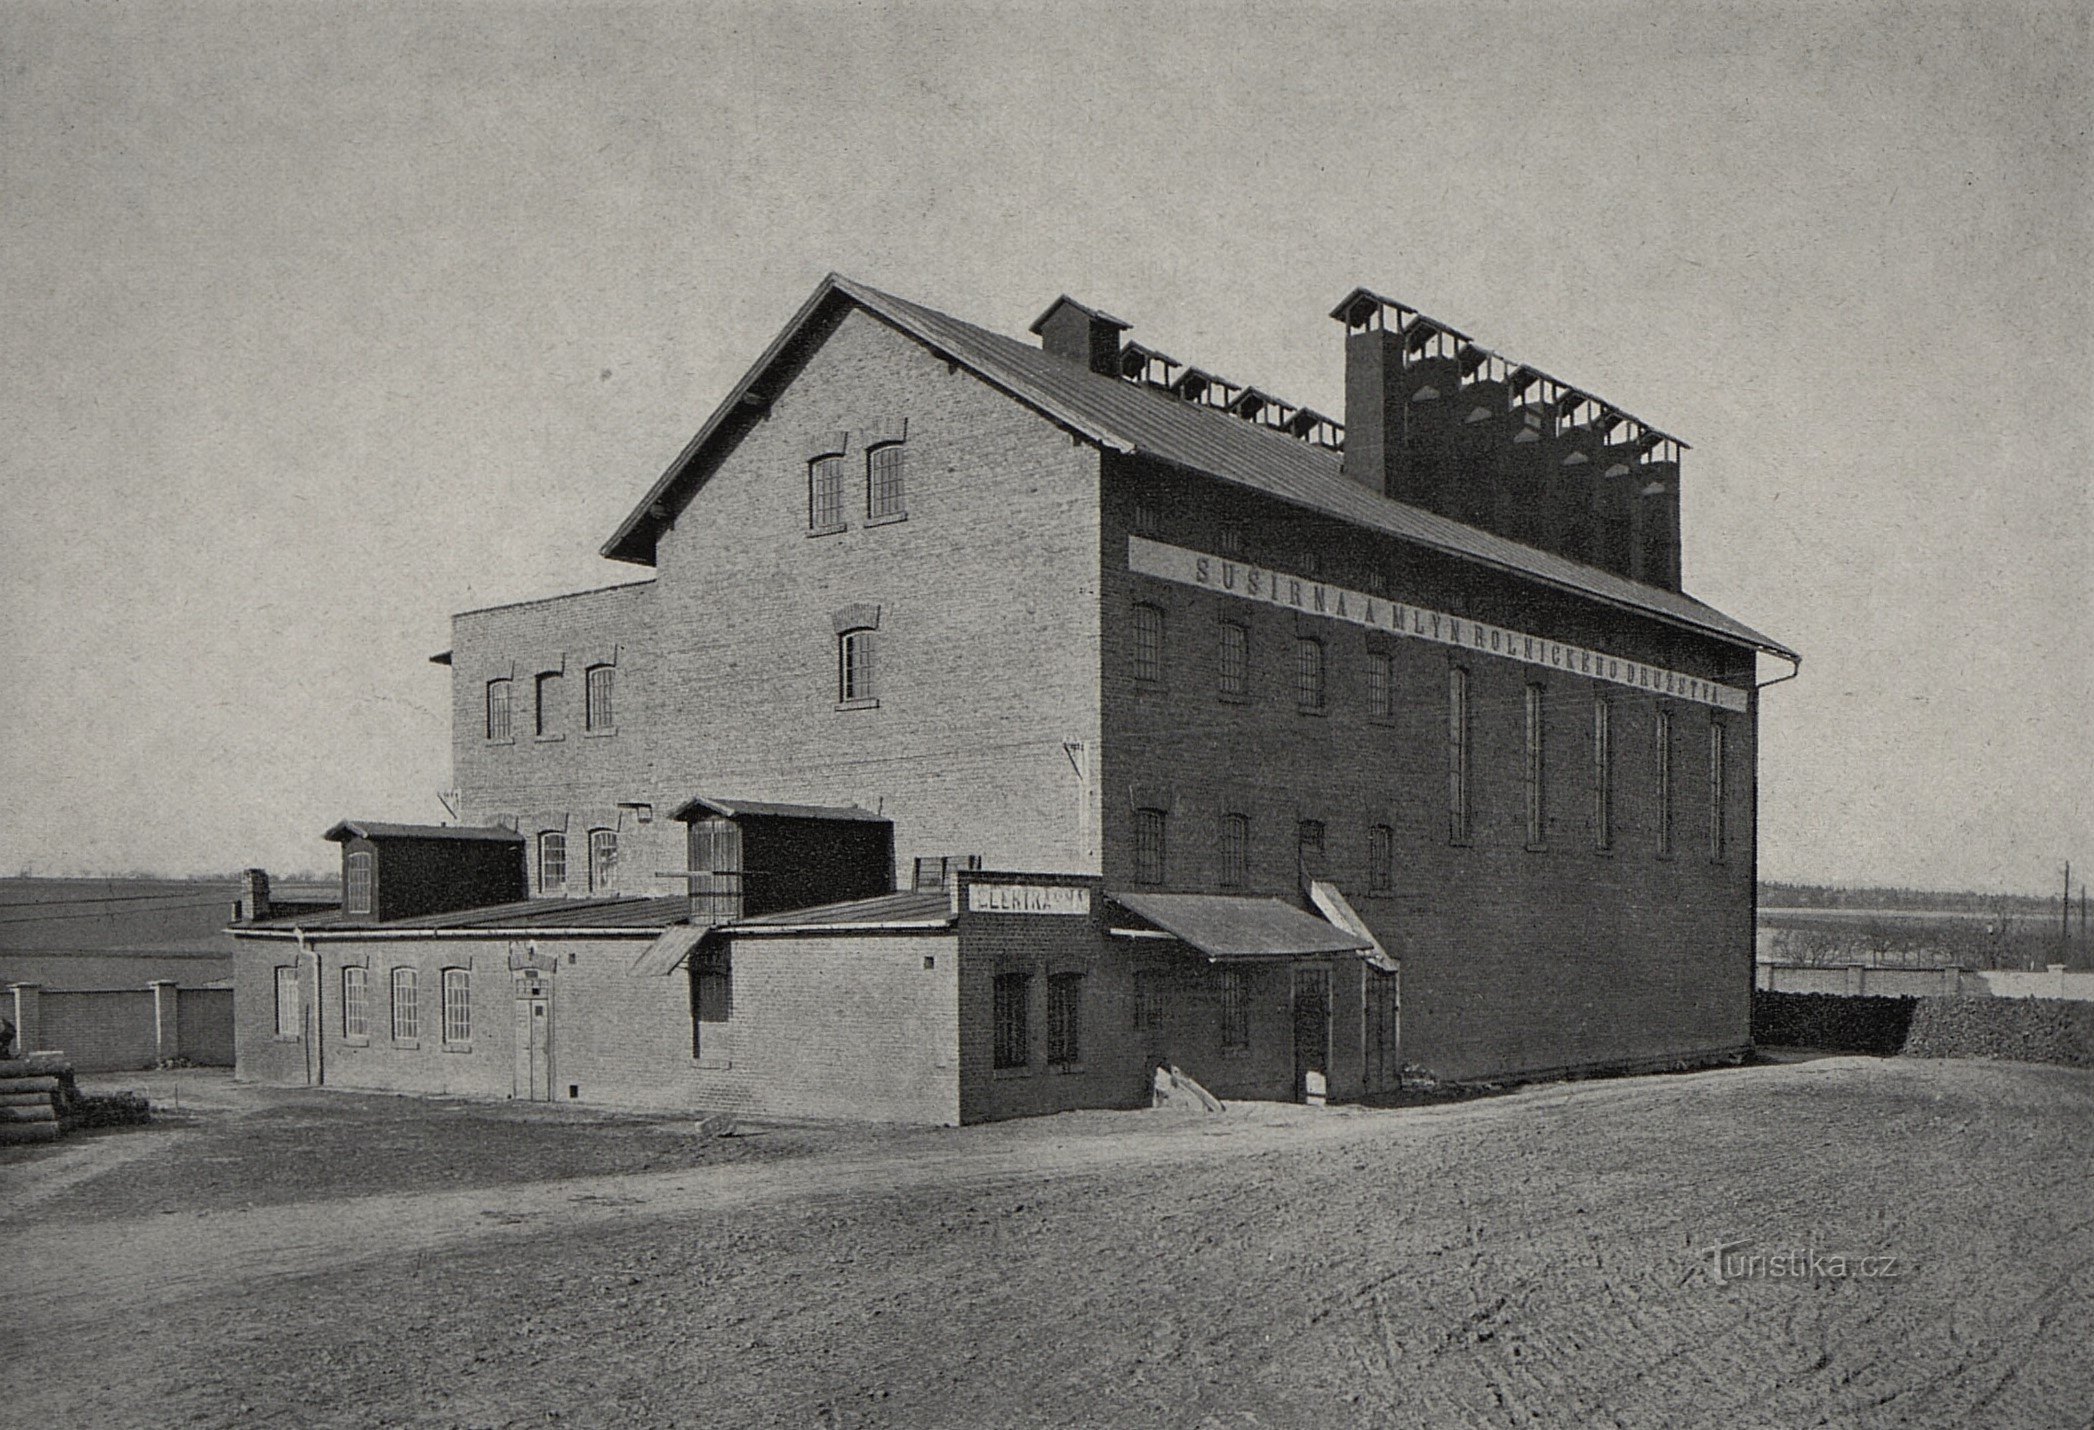 Torkanläggning i Čistevs före 1928